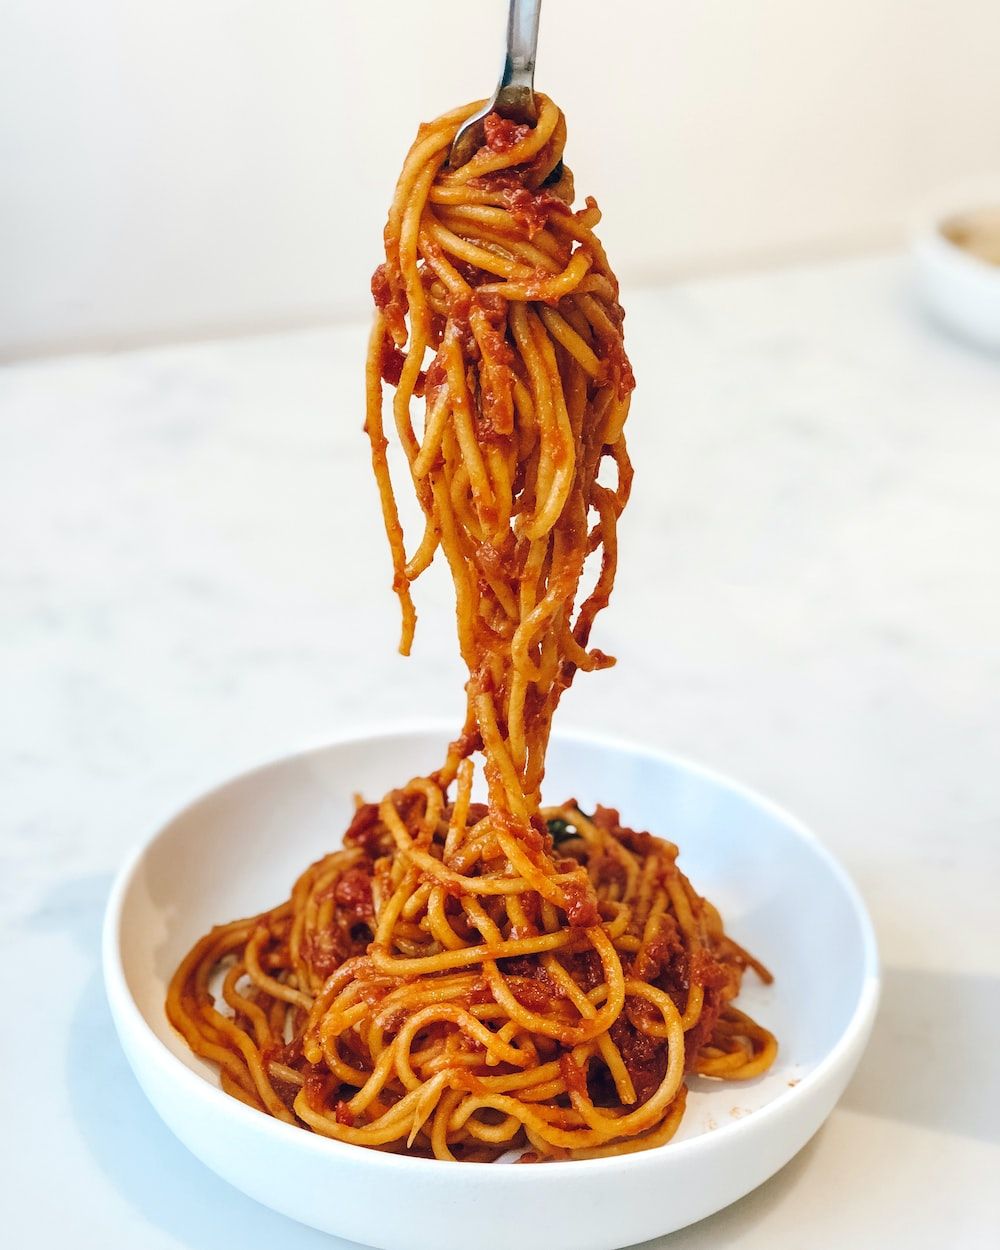  Nudeln Hintergrundbild 1000x1250. Spaghetti Picture. Download Free Image